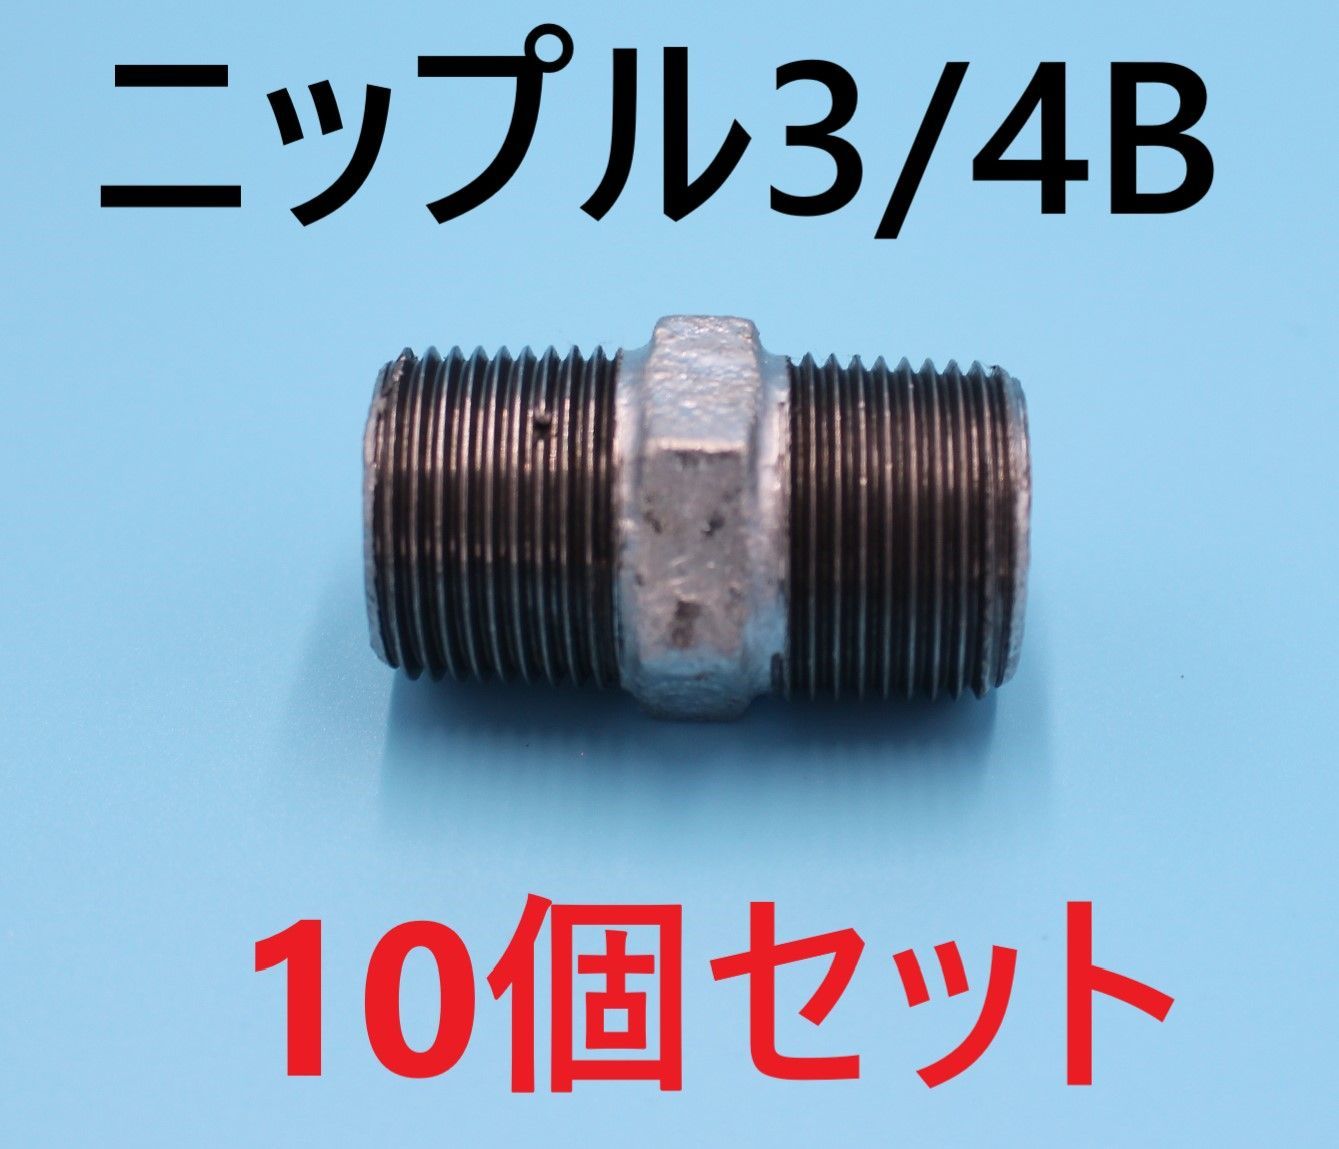 ⛵六角ニップル20A 3/4B 6分10個可鍛鋳鉄製管継手(白)ねじ込み配管継手